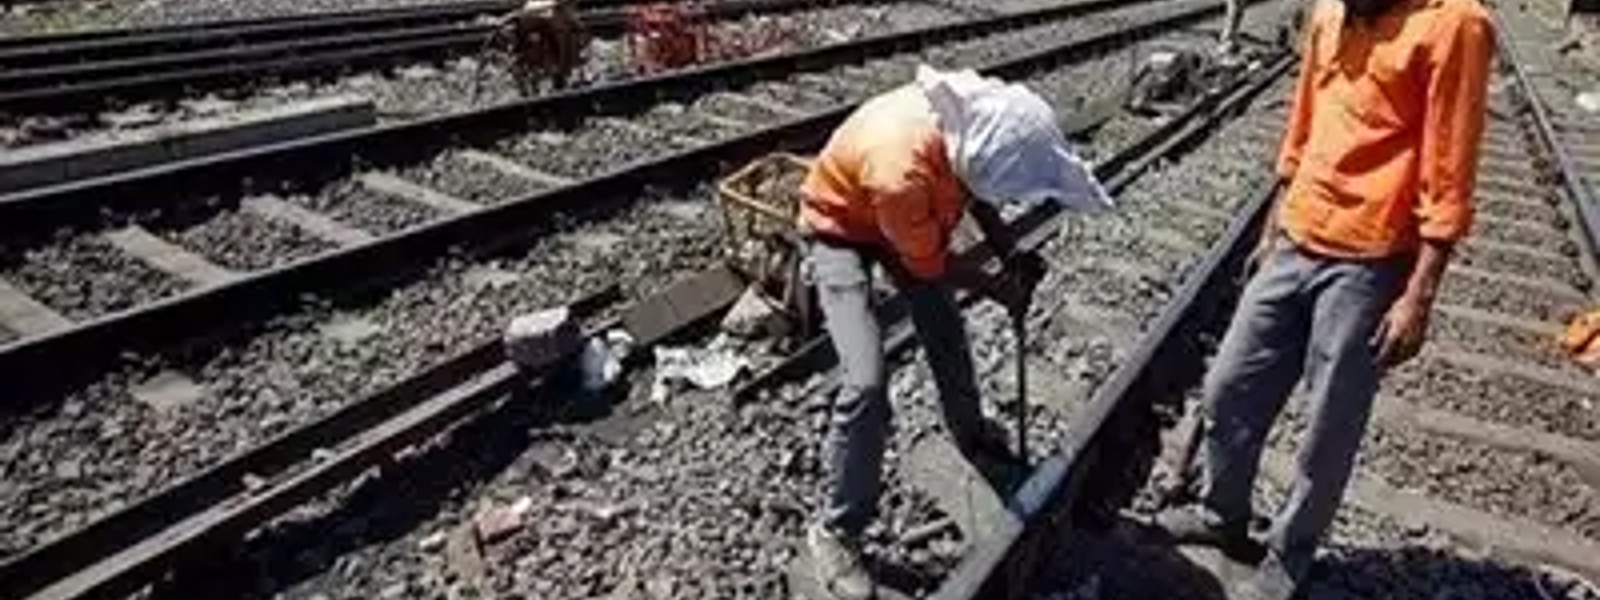 Poor track maintenance caused train derailment